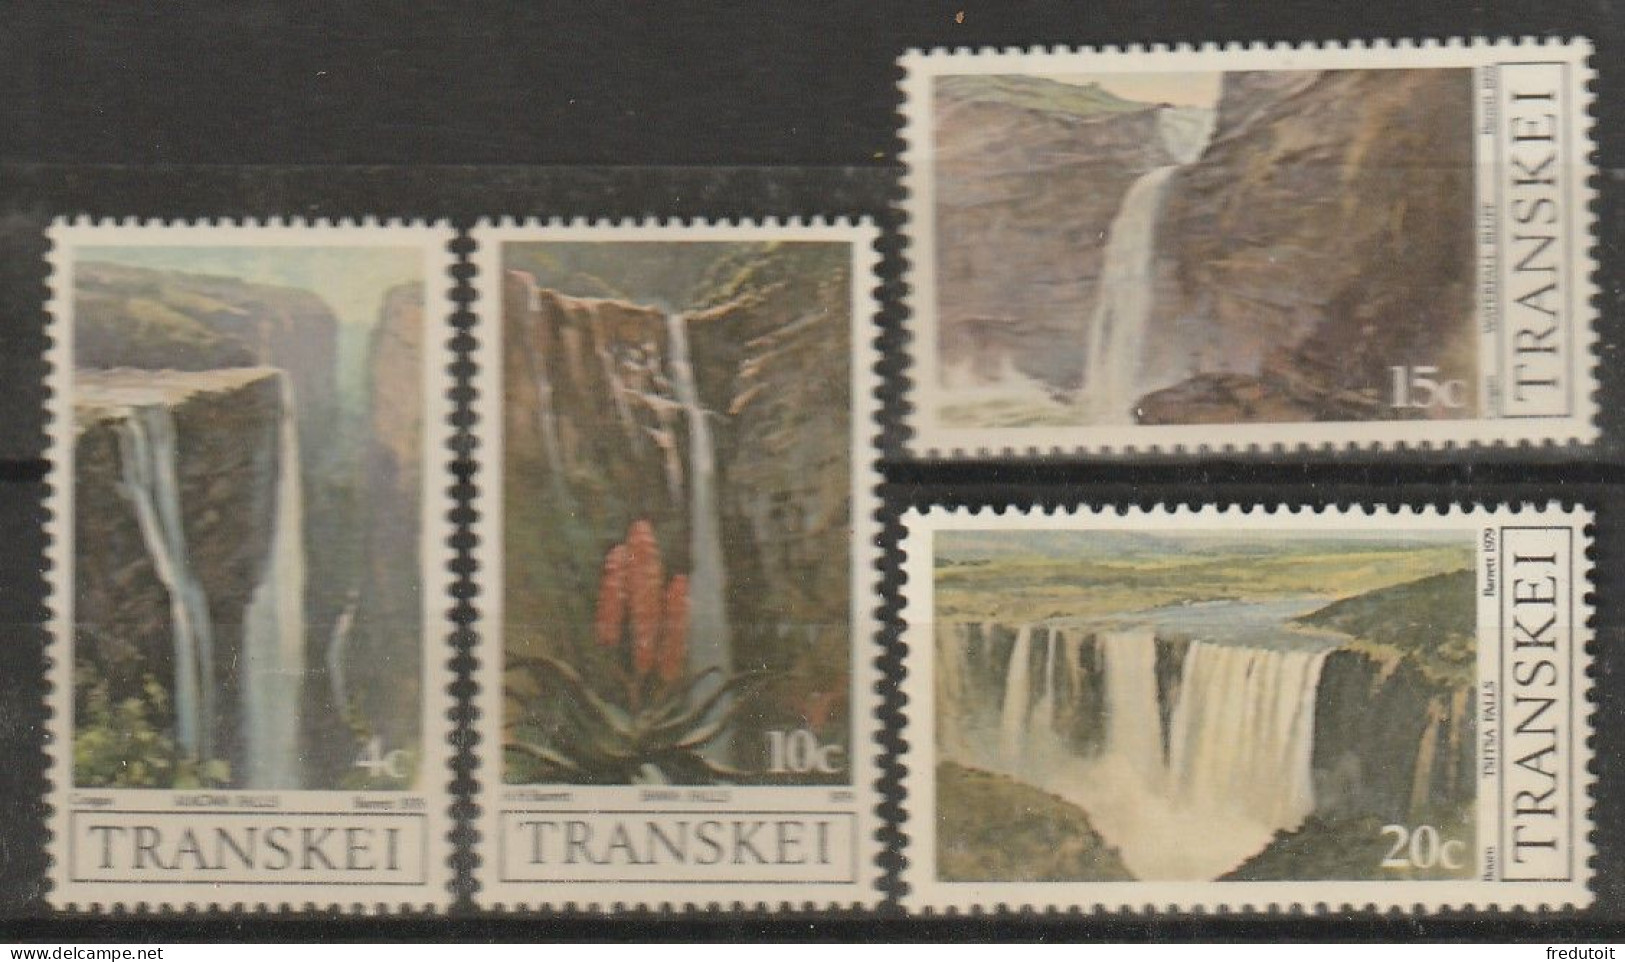 TRANSKEI - N°58/61 ** (1979) Chutes D'eau - Transkei